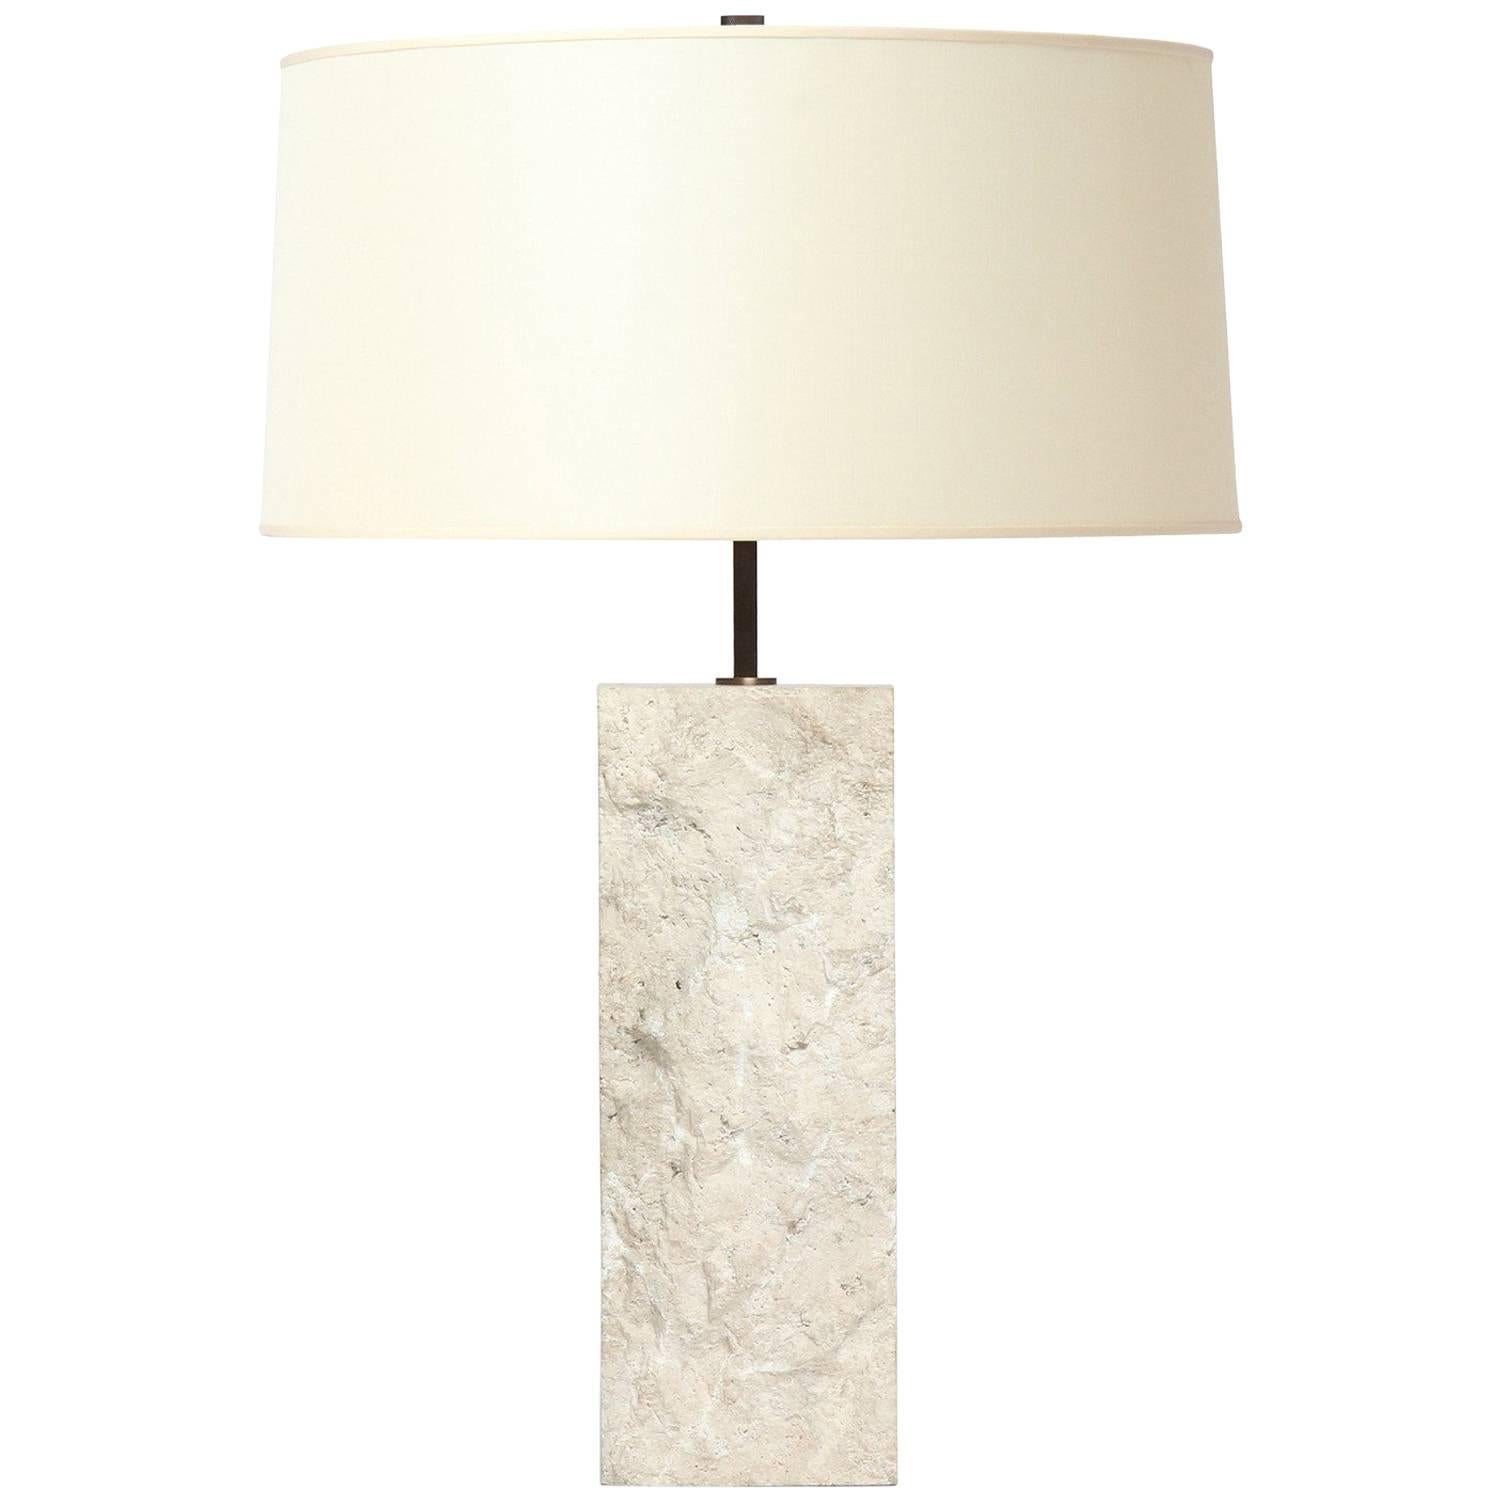 Une lampe de table rectangulaire substantielle en calcaire blanc massif avec une surface ciselée texturée.
Le corps de la lampe mesure 15.75